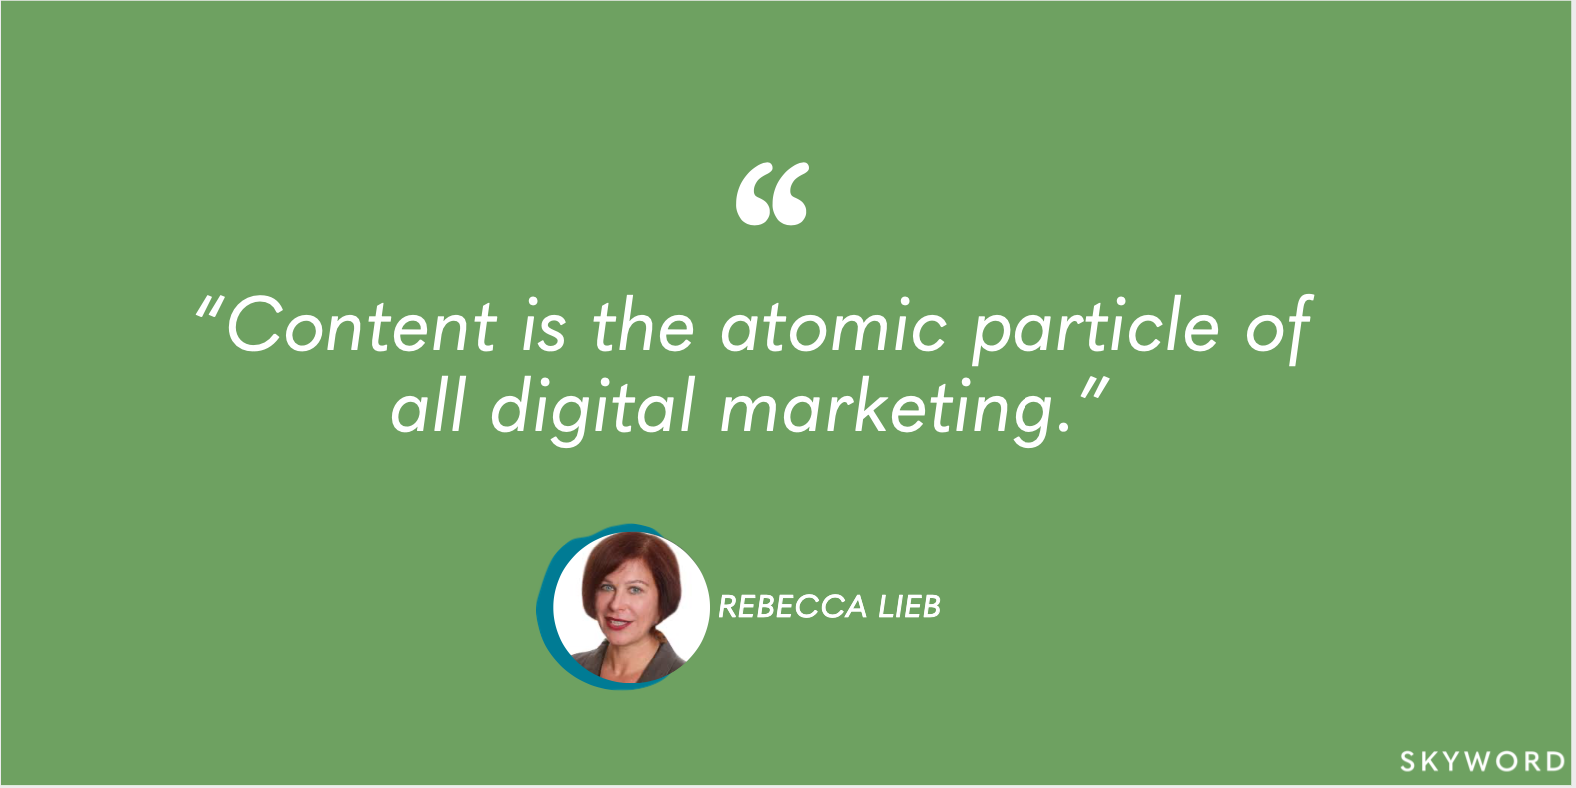 rebecca lieb content marketing quote